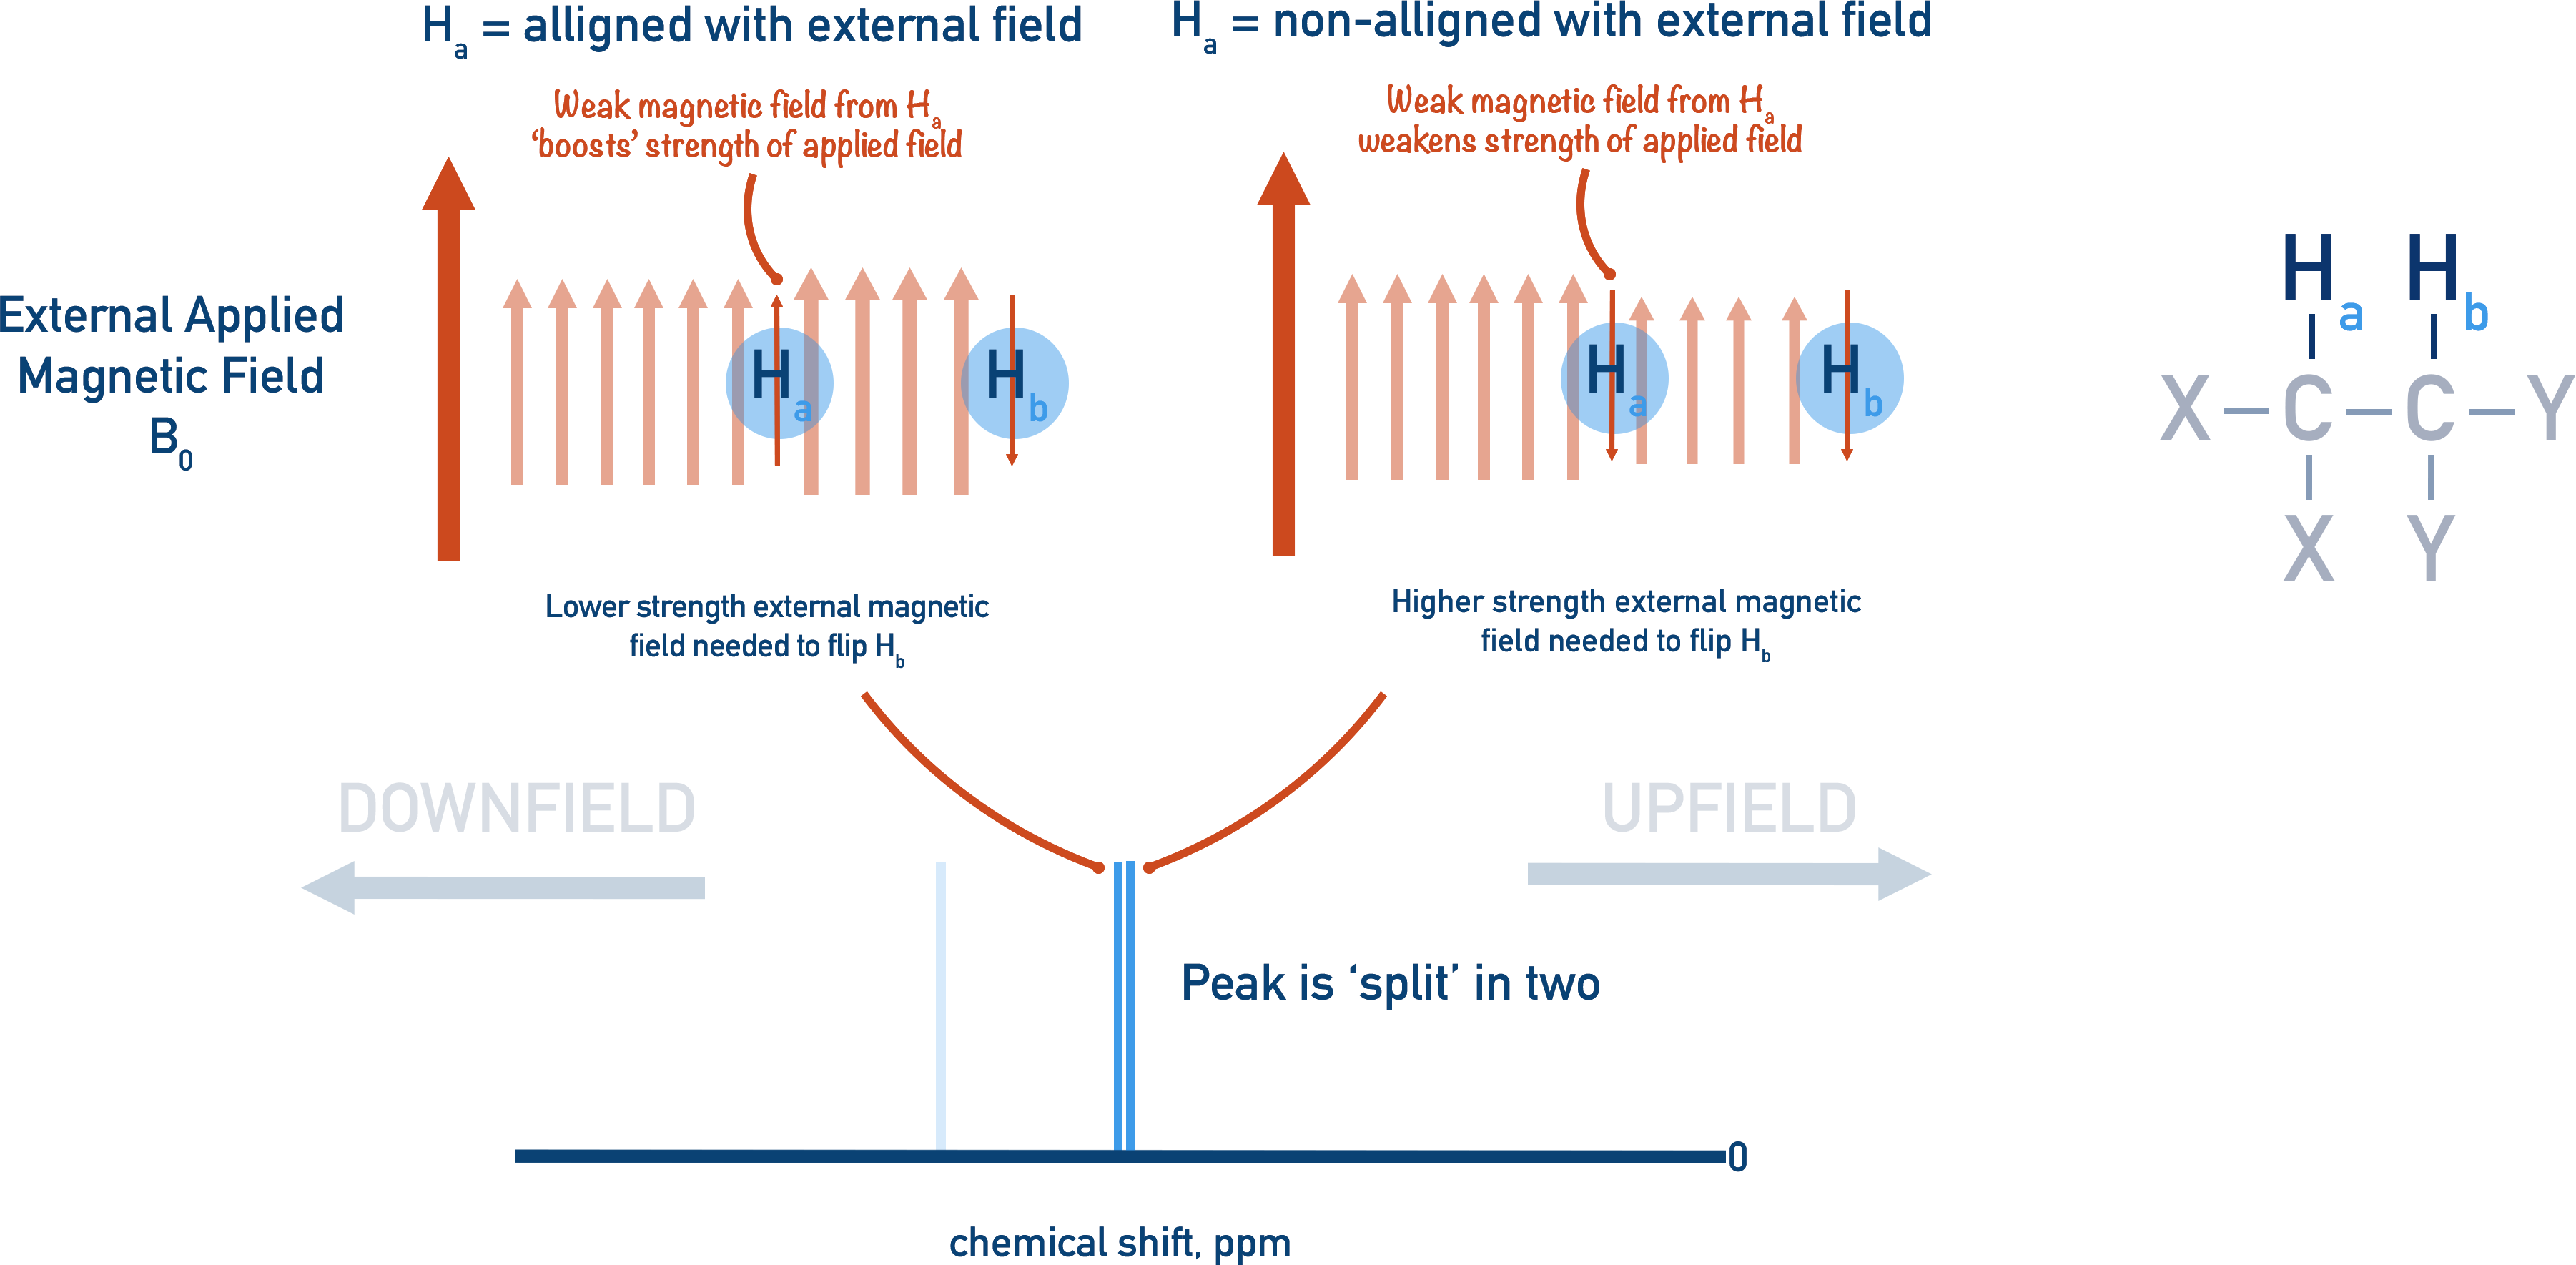 NMR Spectroscopy splitting pattern downfield upfield